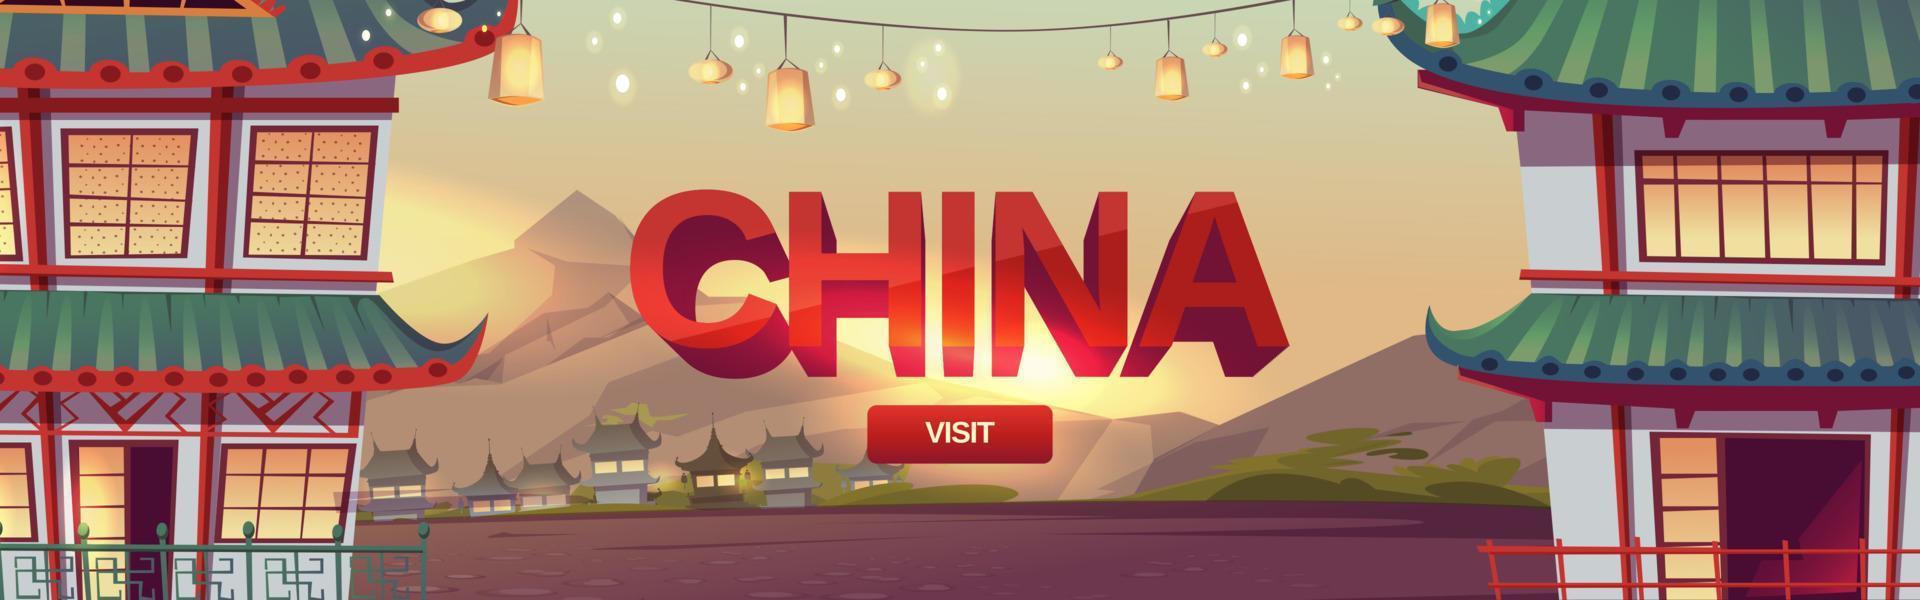 besök Kina webb baner, resa till kinesisk by vektor